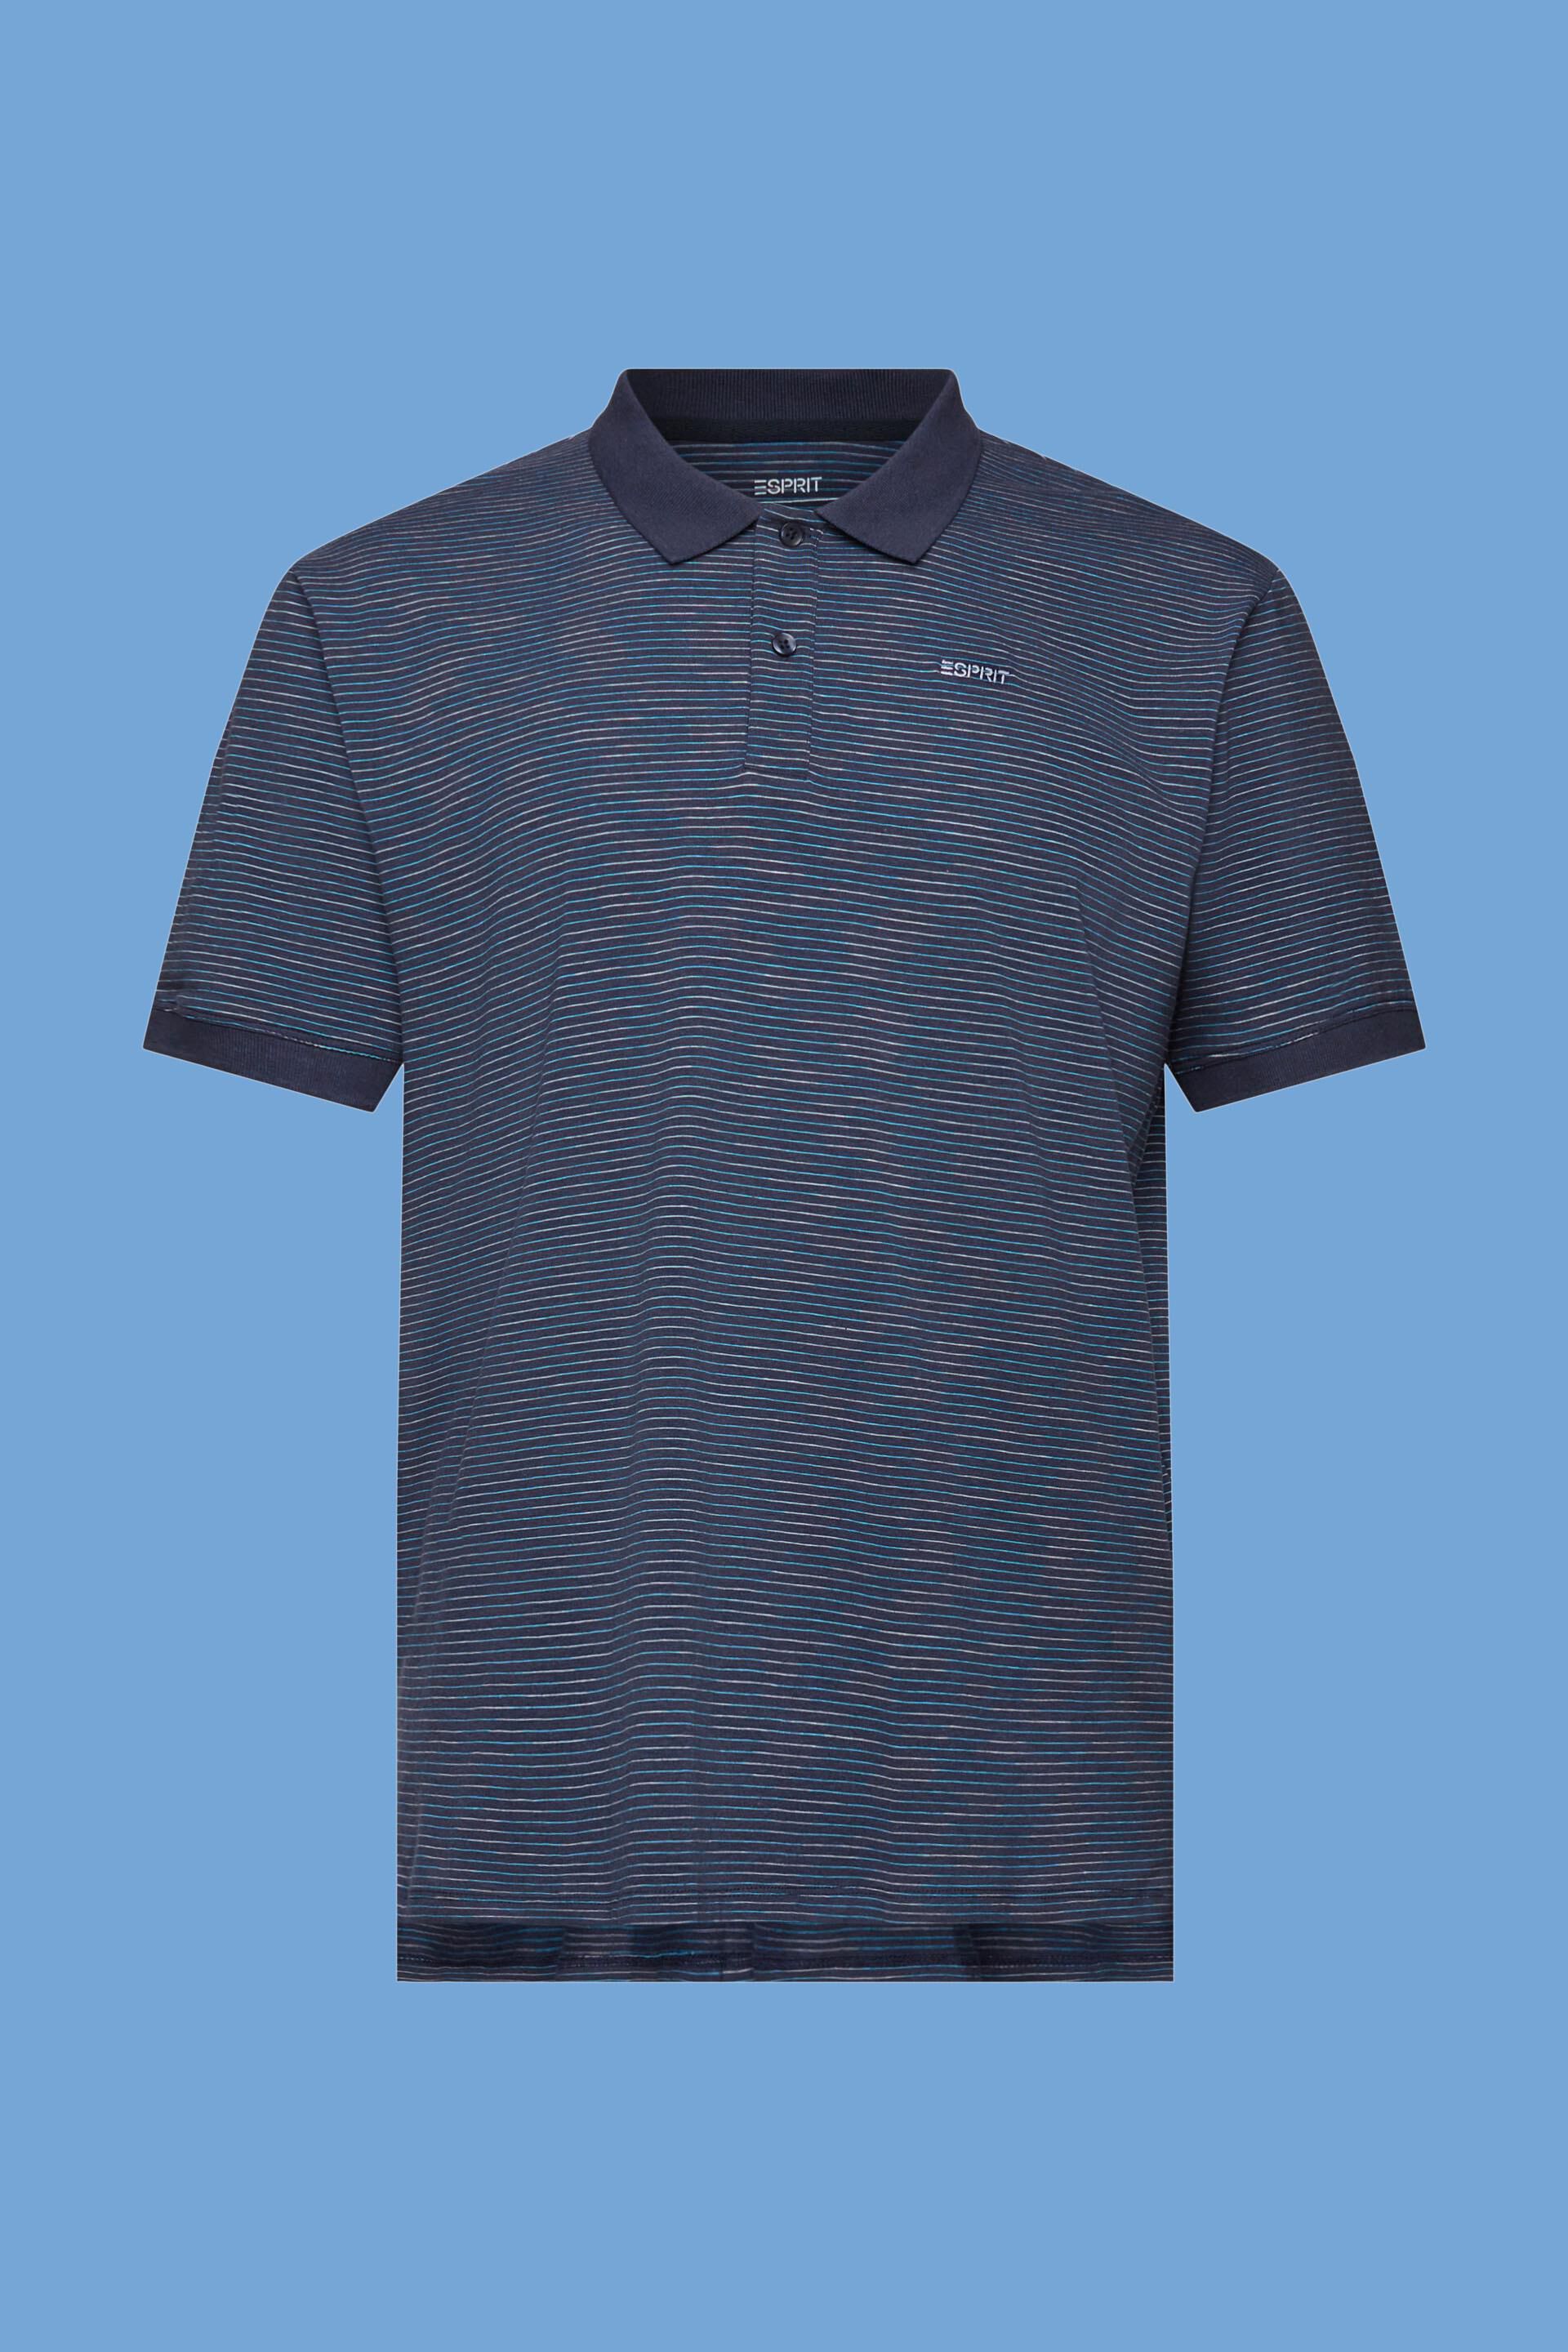 ESPRIT - Mélange striped polo shirt at our online shop